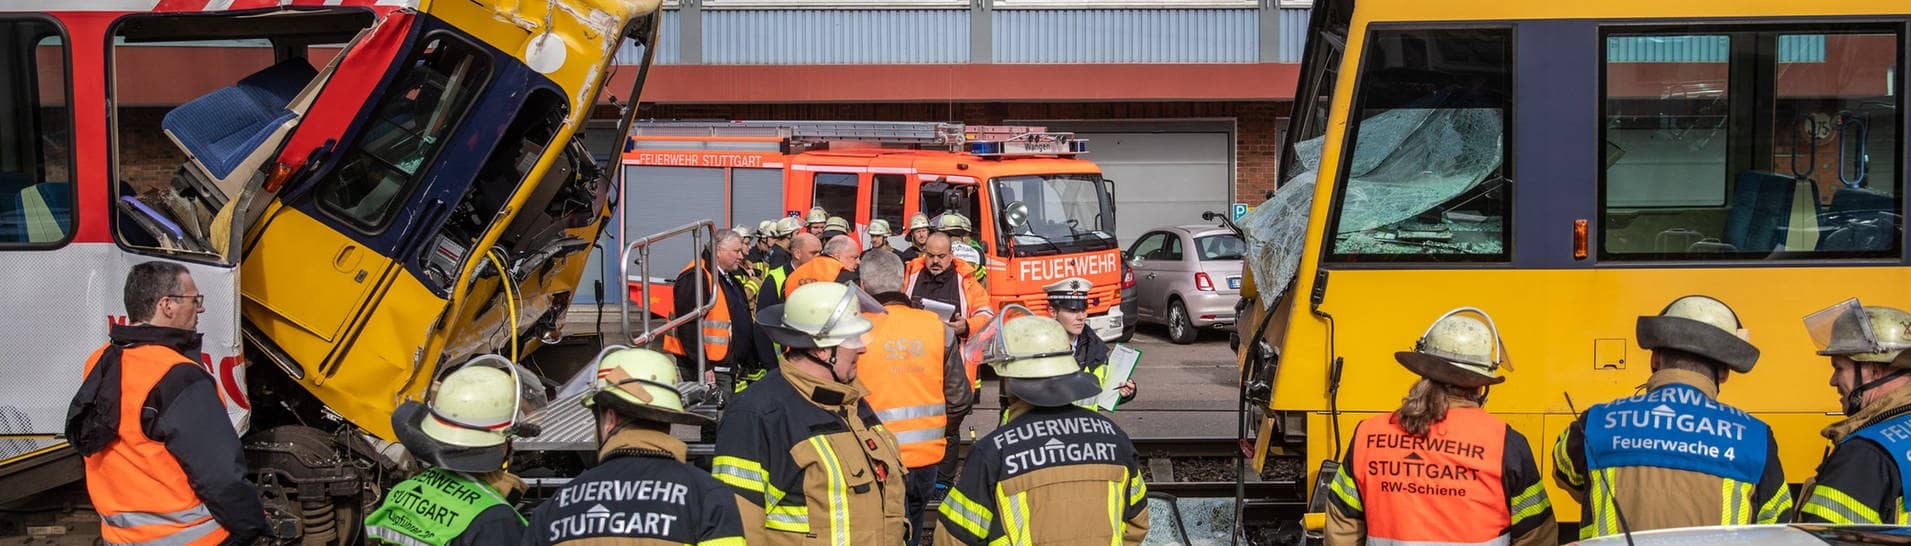 Einsatzkräfte der Feuerwehr arbeiten an zwei zerstörten Stadtbahnen. Bei dem Zusammenstoß zweier Stadtbahnen im Stuttgarter Stadtteil Wangen sind mehrere Menschen verletzt worden.